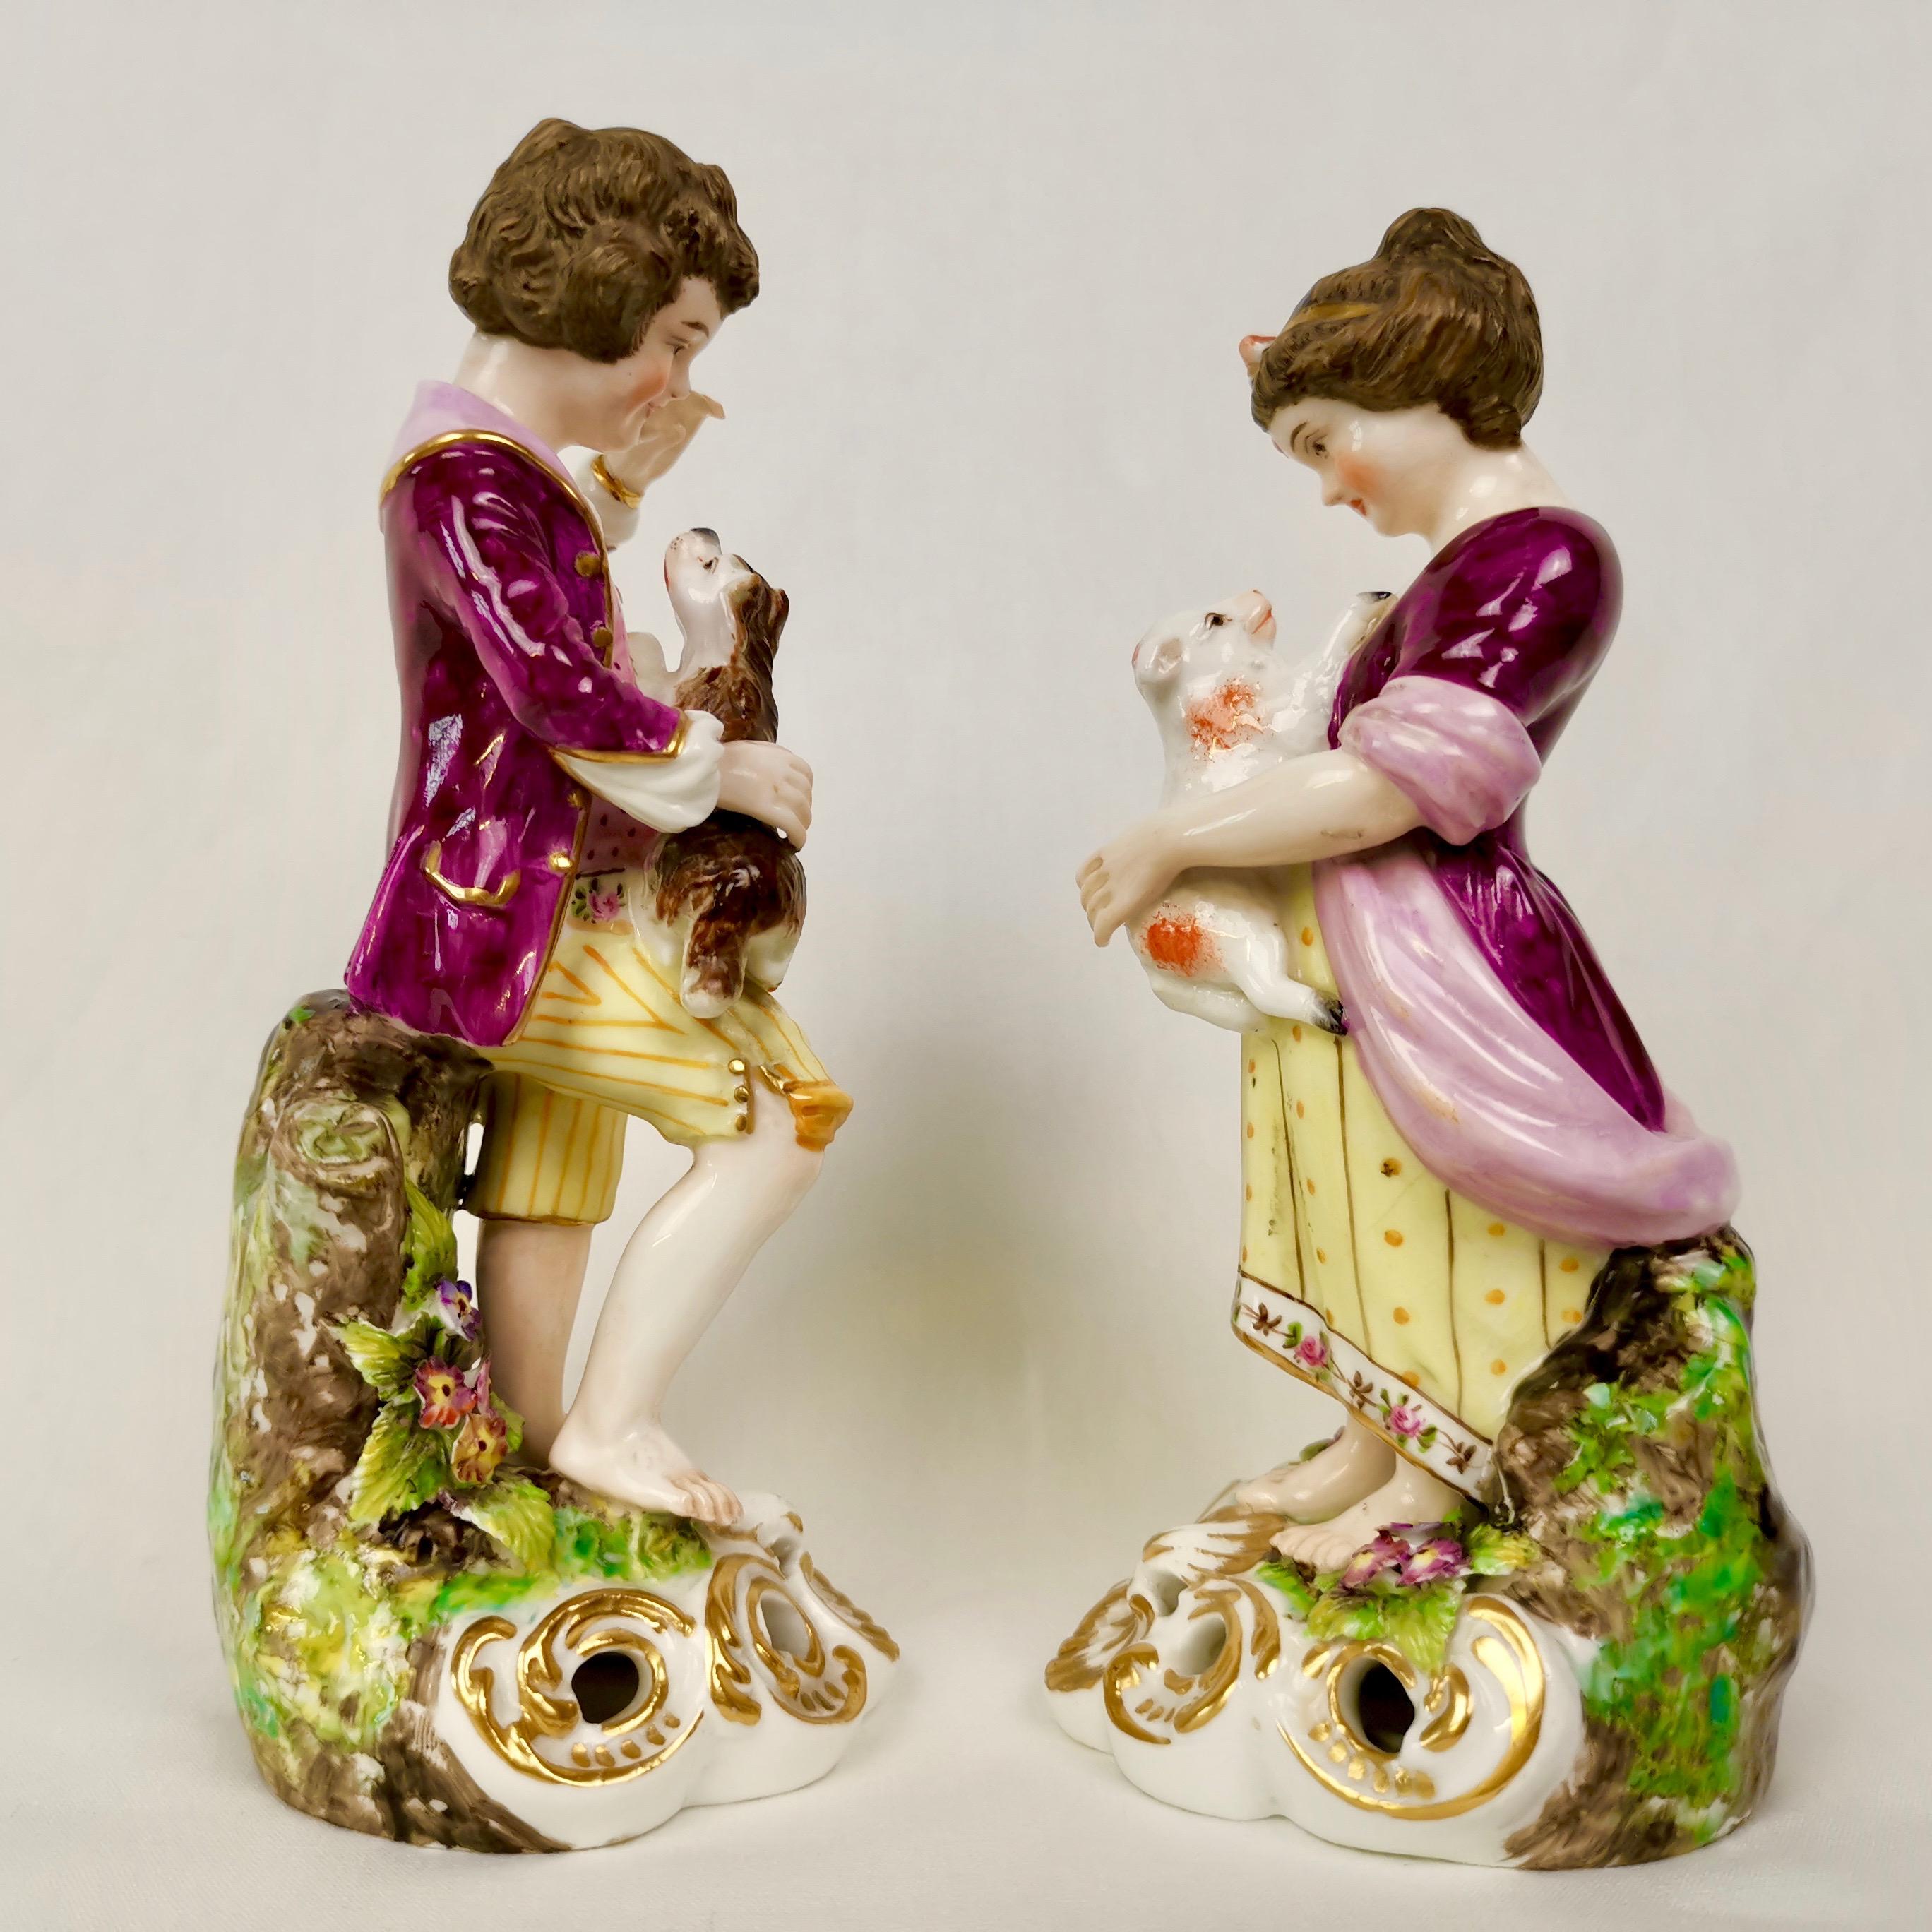 Il s'agit d'un ensemble de deux figurines très charmantes représentant un garçon et une fille jouant avec des animaux. Il a été fabriqué par la Derby King Street Factory (Sampson Hancock) vers 1915 d'après un original géorgien des années 1760.